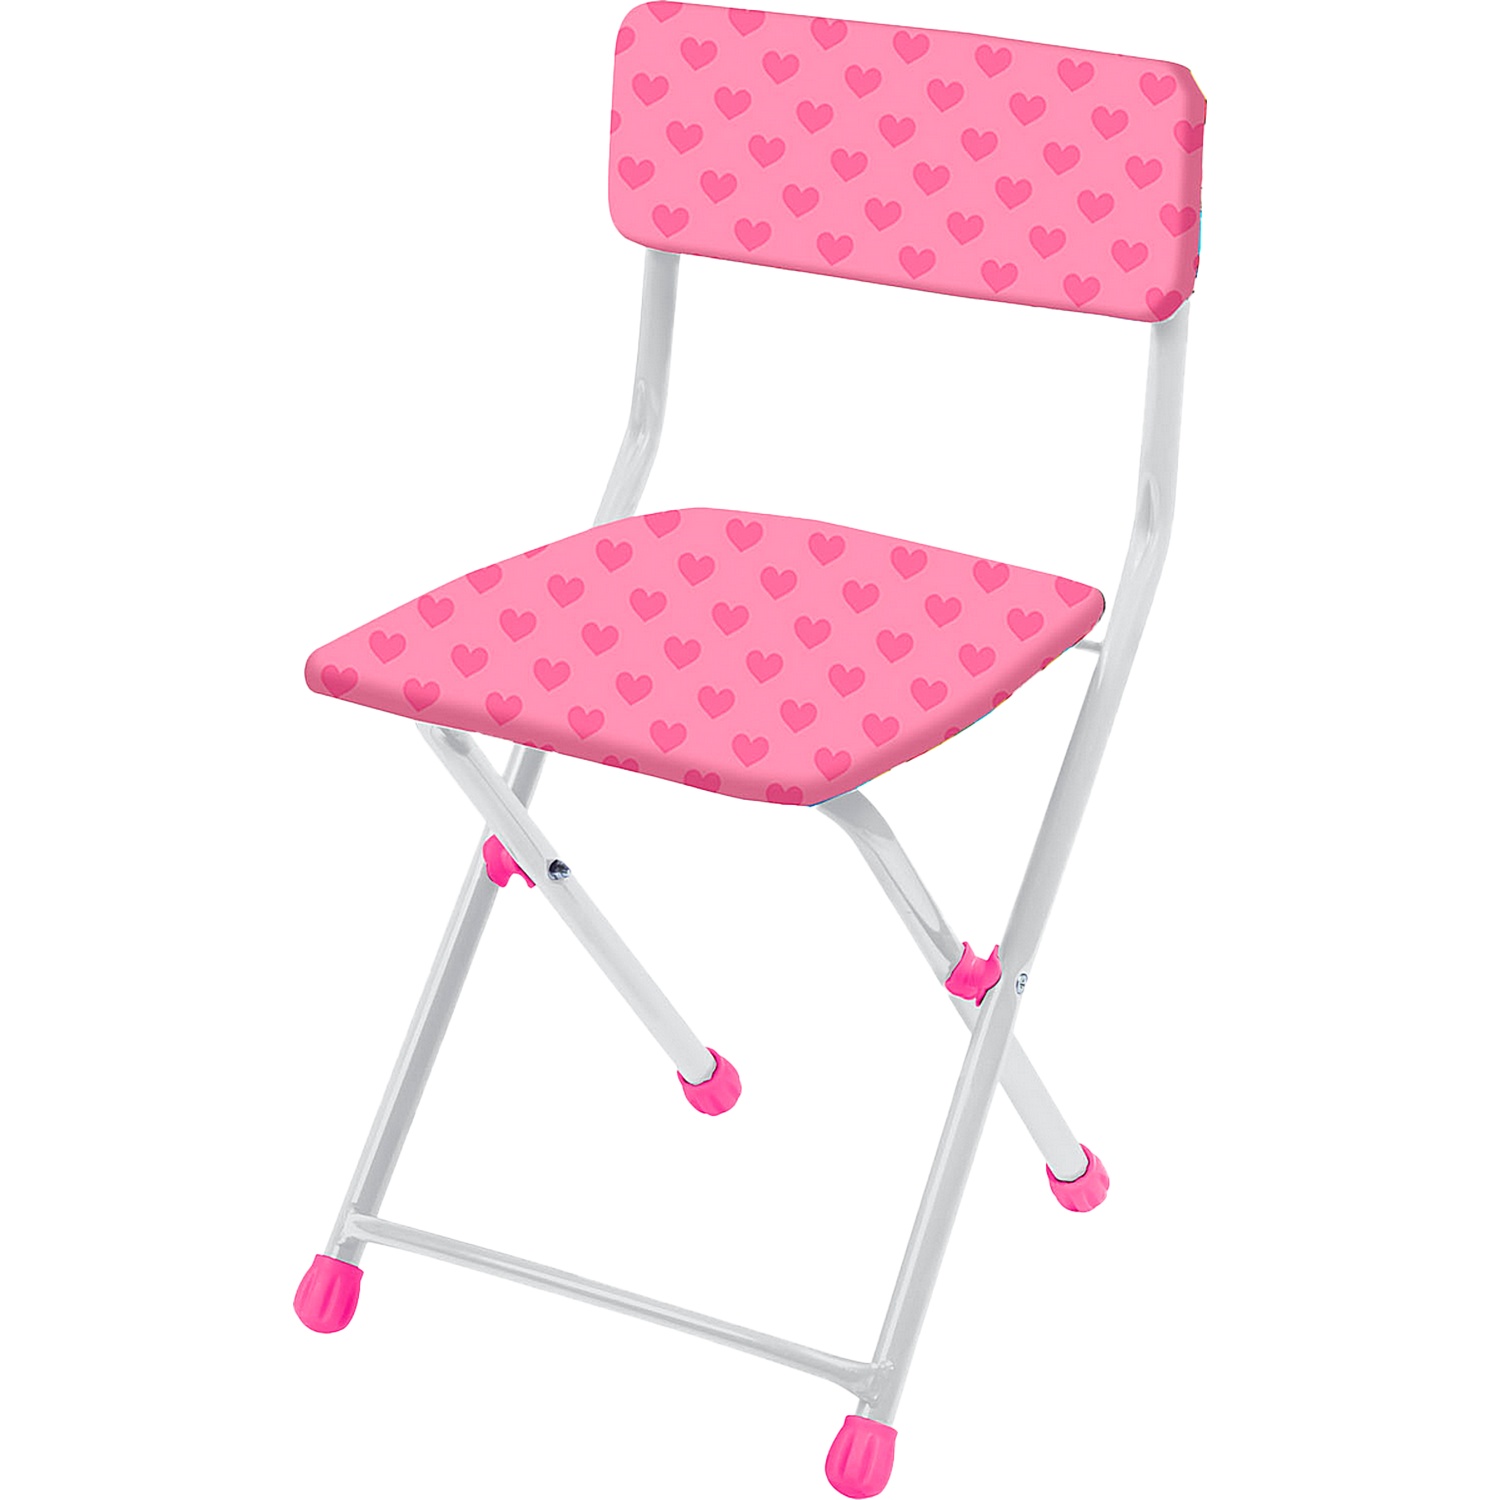 Детский складной мягкий стульчик со спинкой Nika СТУ1/1 детский стол и стул складной nika кнд4 5 ламинированный с пеналом и азбукой